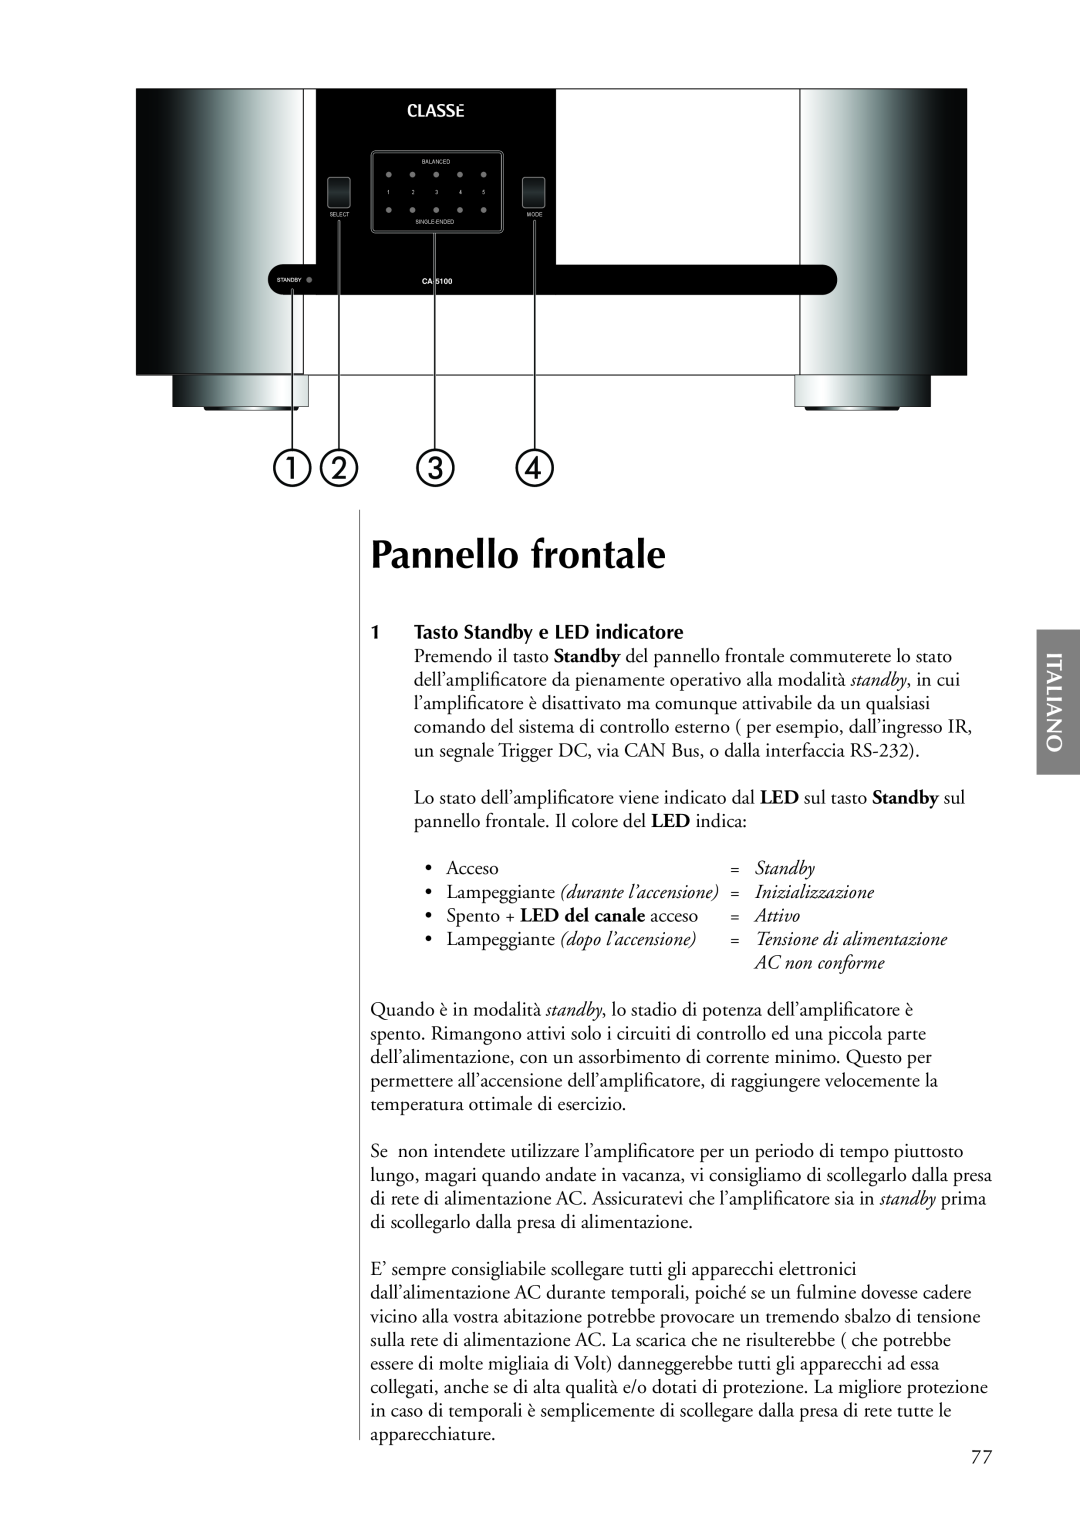 Classe Audio CA-5100 Pannello frontale, Italiano, 1Tasto Standby e LED indicatore, Attivo, AC non conforme, = Standby 